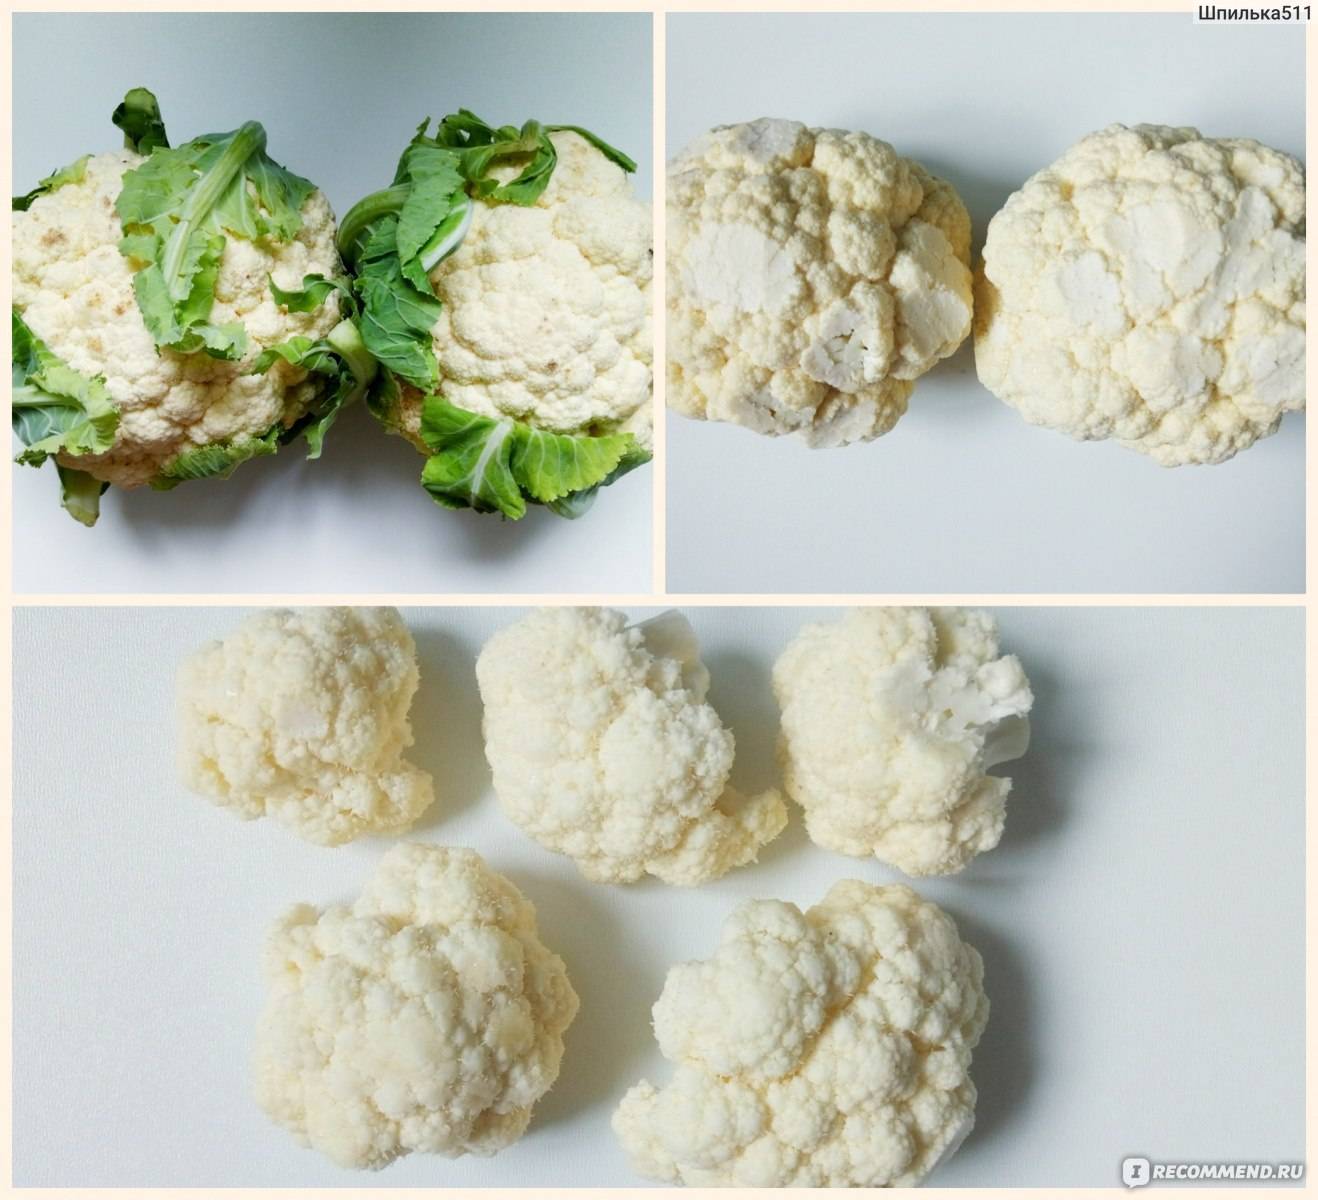 Как приготовить цветную капусту грудничку: рецепты пюре для первого прикорма